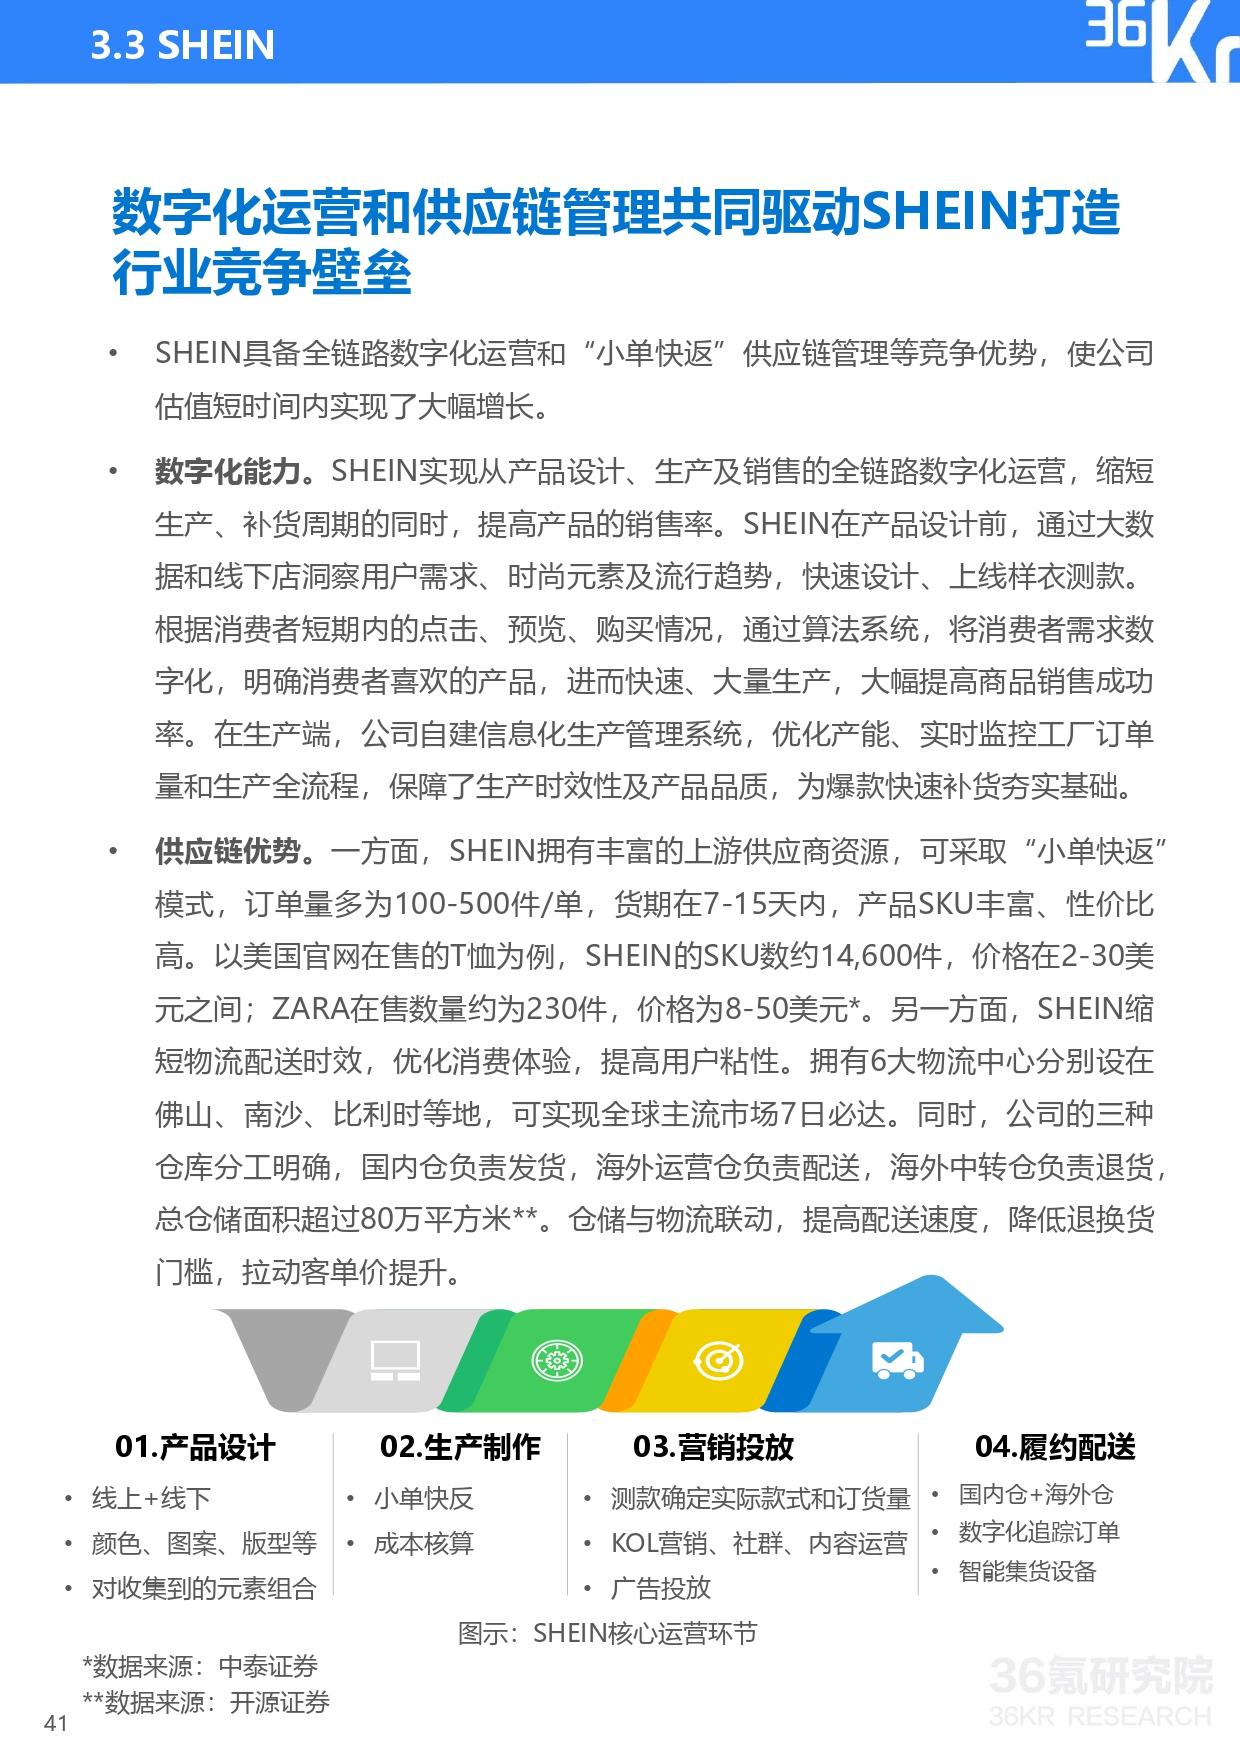 36氪研究院 | 2021年中国独角兽企业发展研究报告